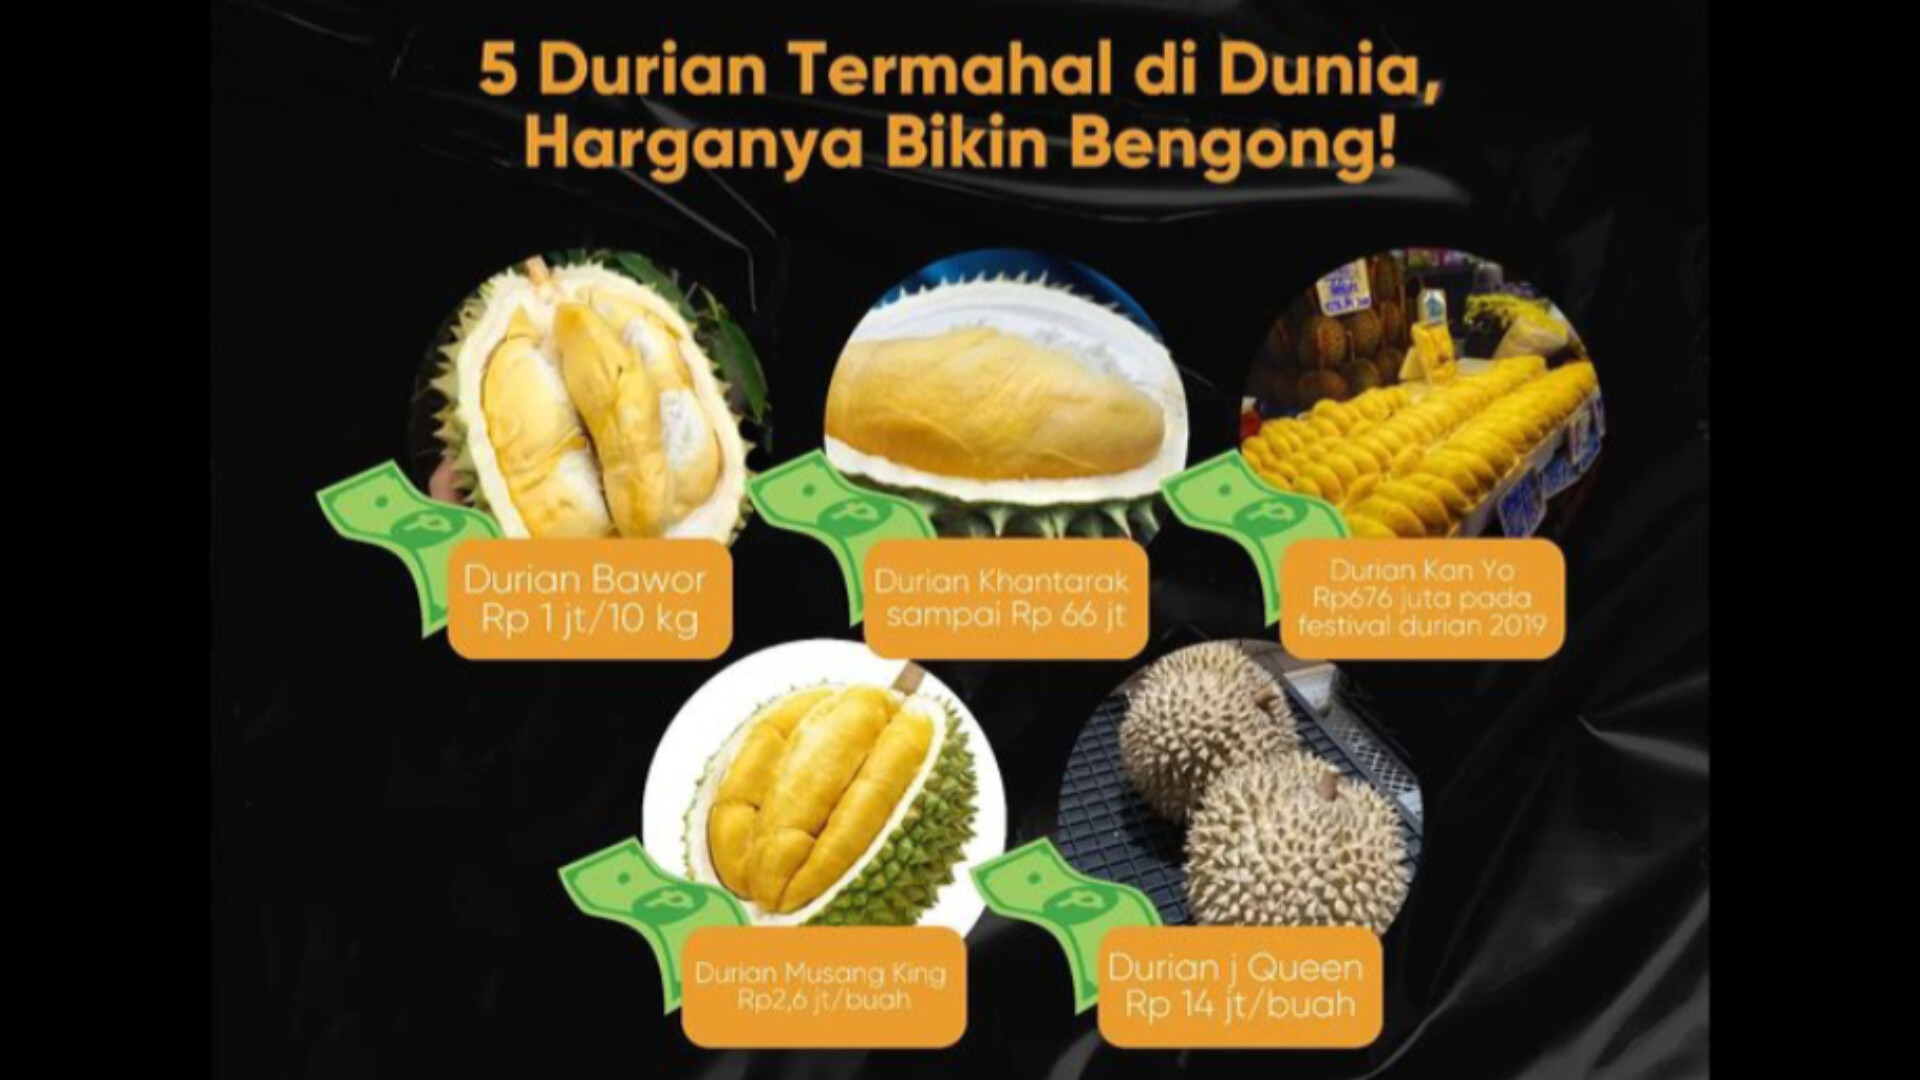 5 Durian Termahal di Dunia Dengan Harga Fantastis, Bisa Buat Beli Rumah